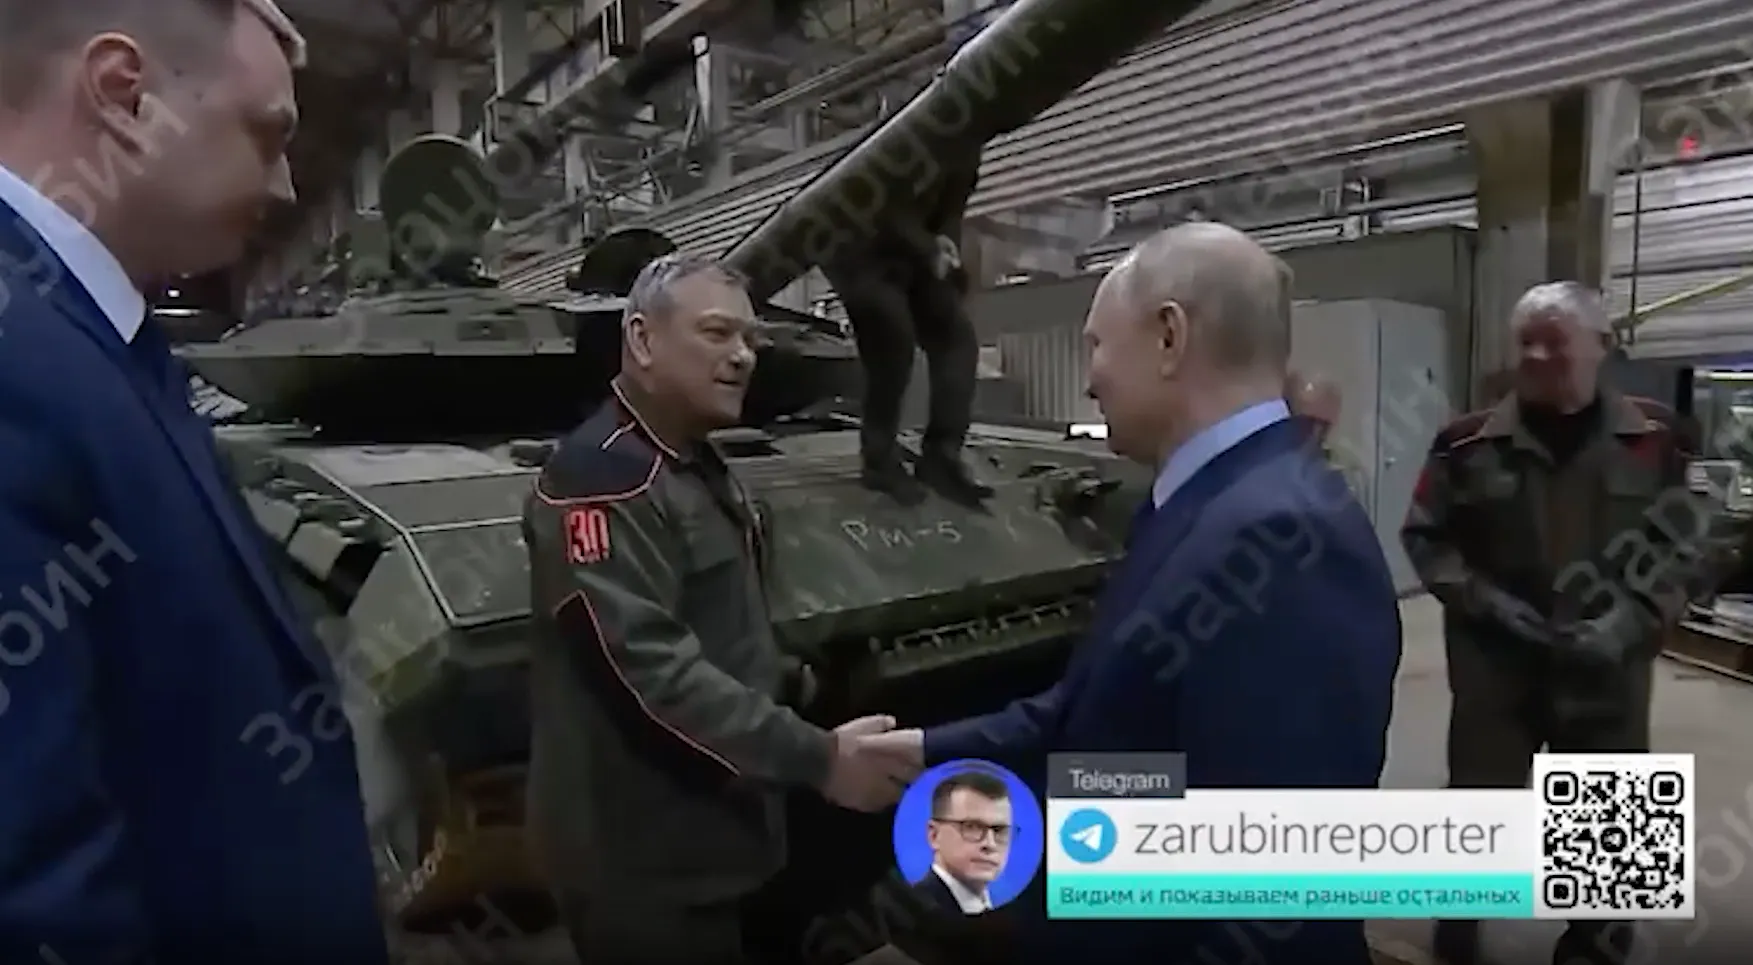 Разволновавшийся рабочий спрыгнул с танка и вытер руку, чтобы поздороваться с Путиным